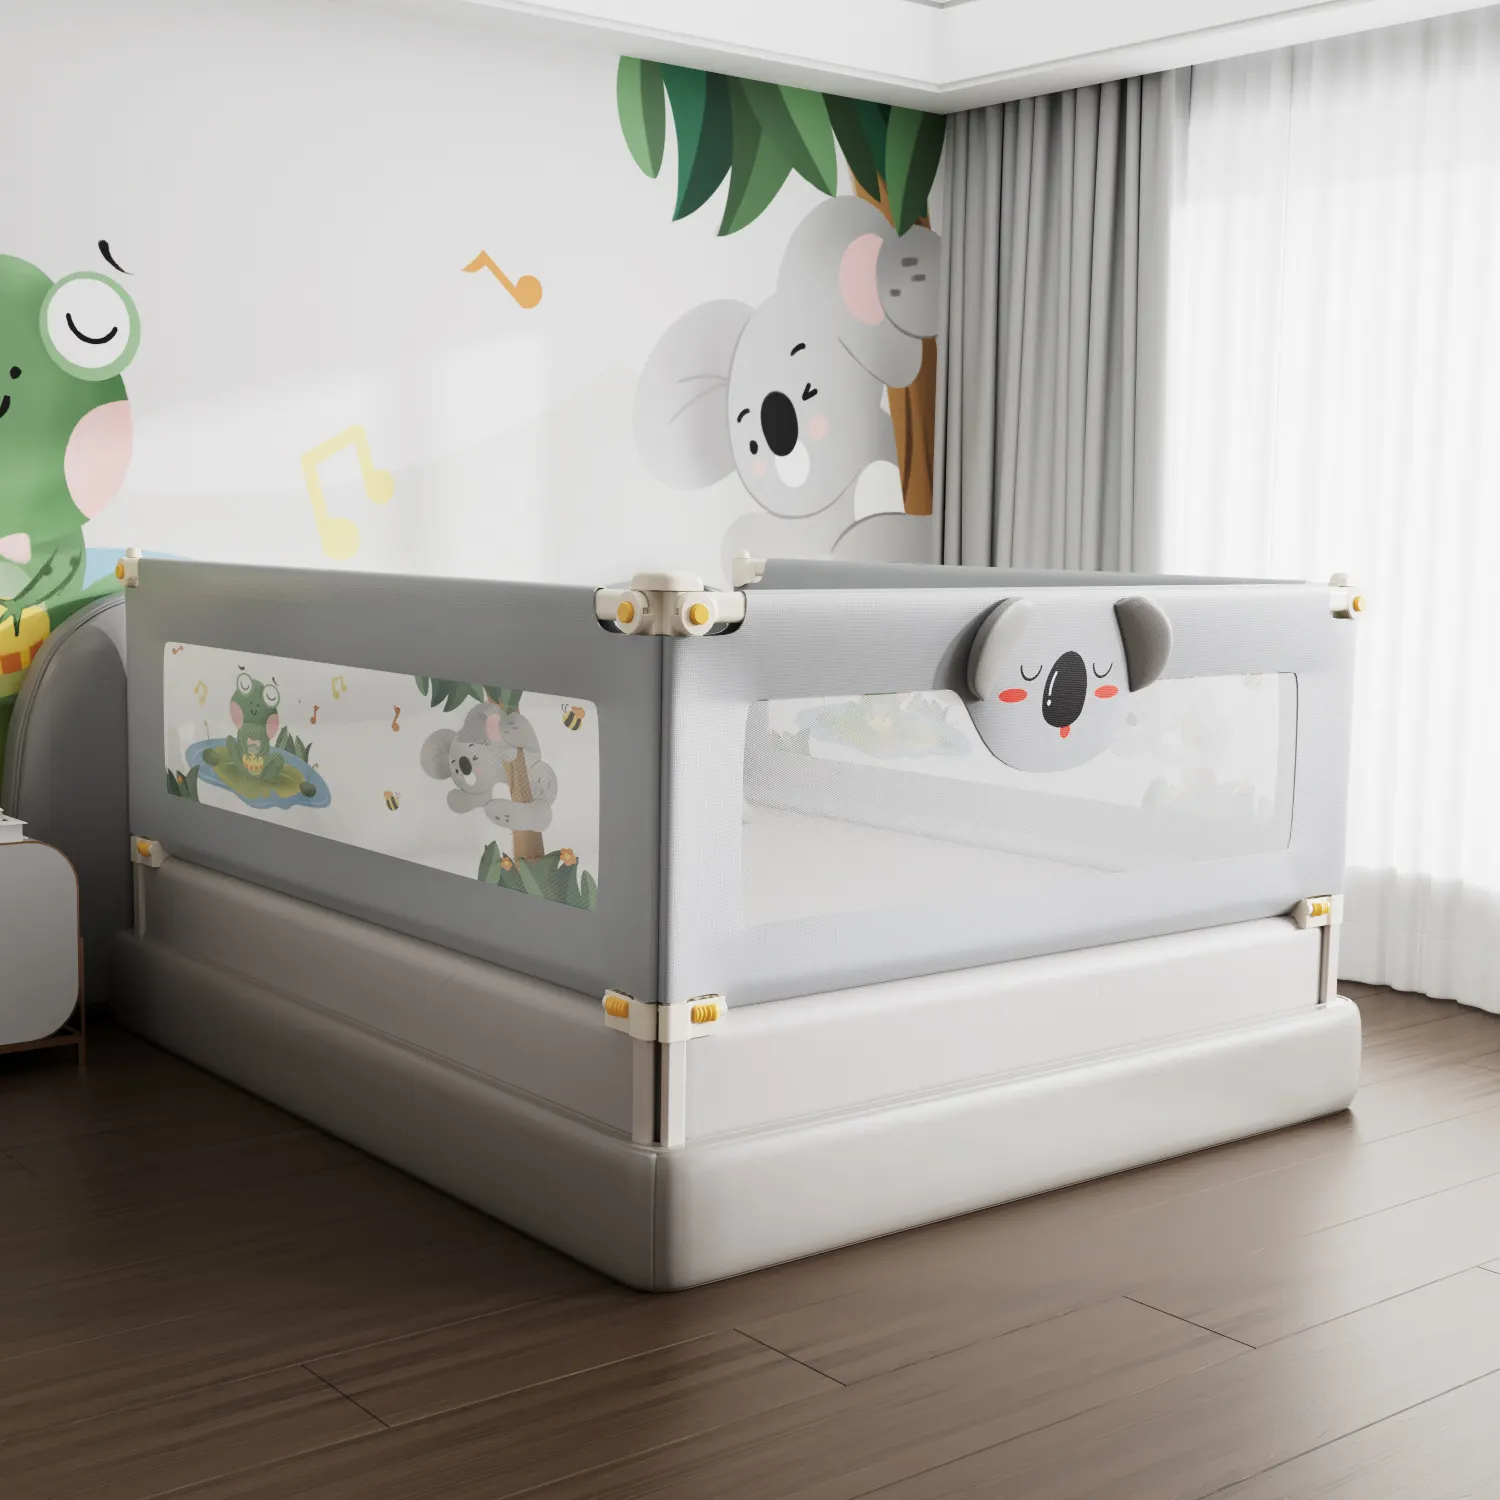 سرير أطفال مضاد للتصادم قابل للتعديل داخل المنزل، سرير قابل للطي، سرير أطفال مضاد للسقوط